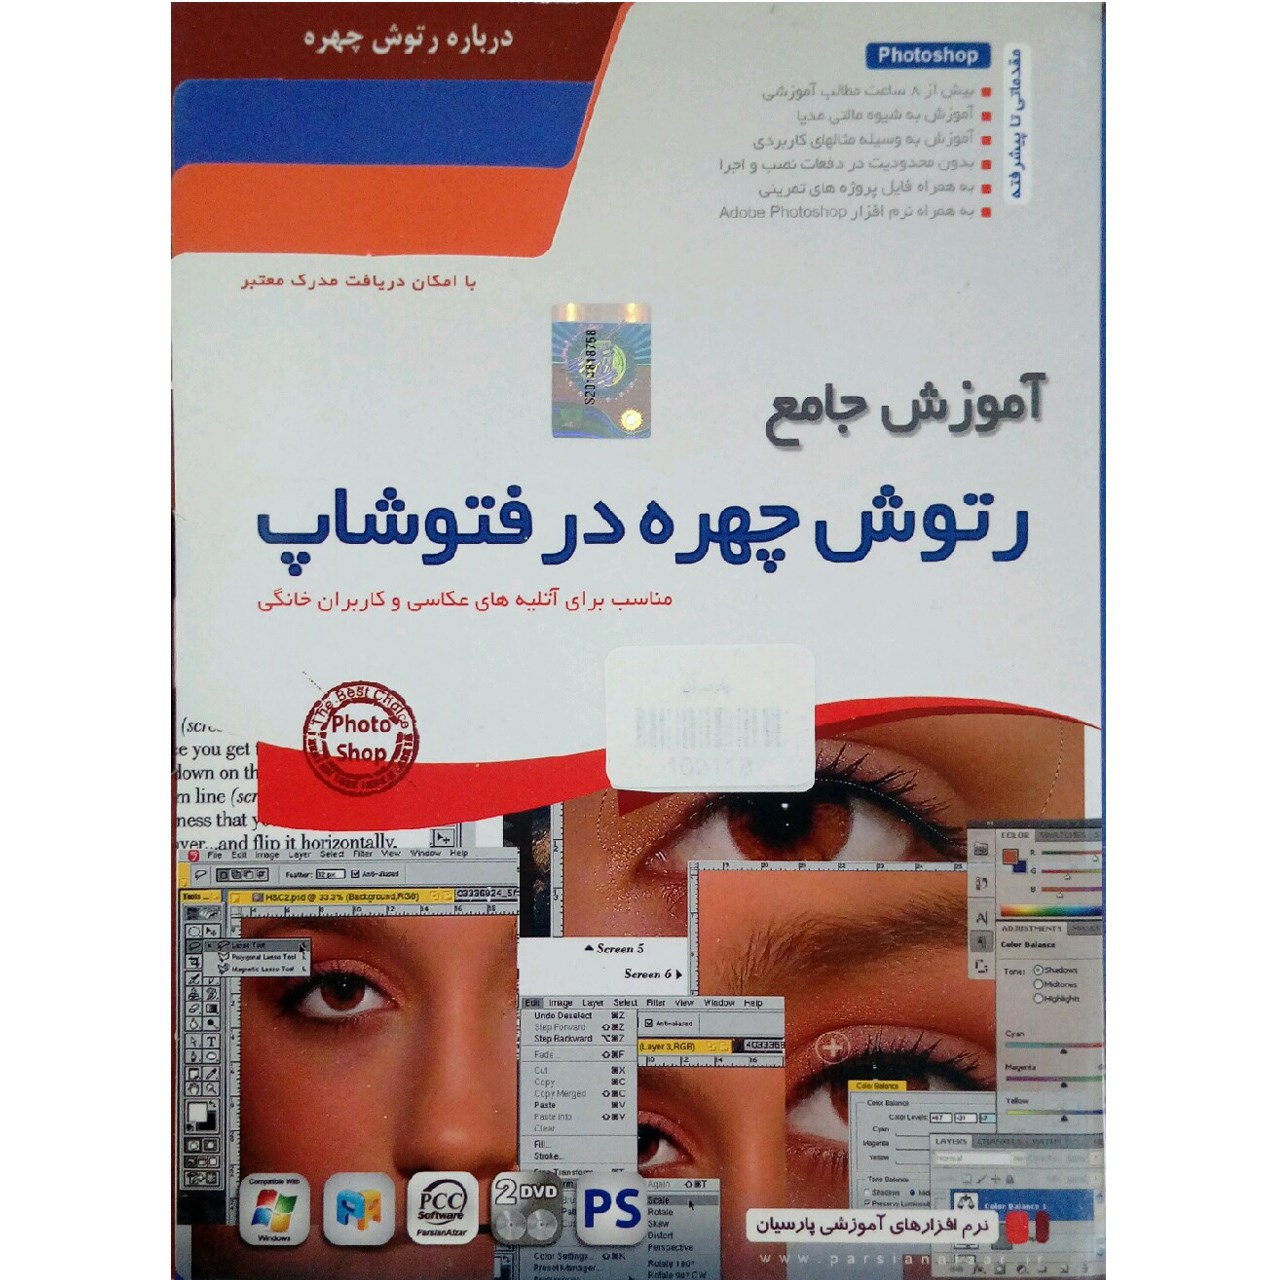 نرم افزار آموزش رتوش چهره در فتوشاپ نشر پارسیان